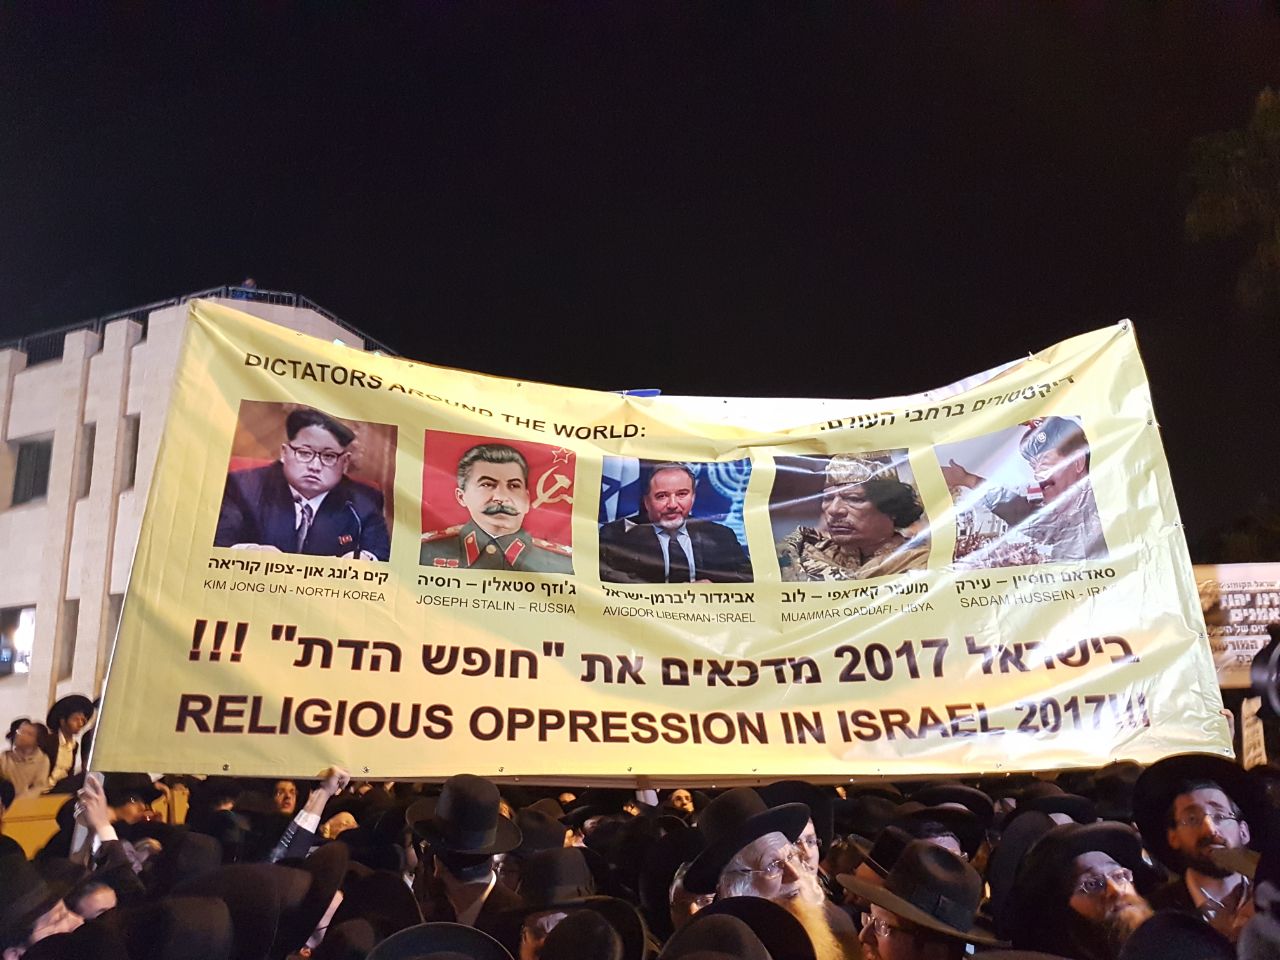 הפגנת הפלג הירושלמי והעדה החרדית בירושלים 28/3/2017 (צילום: קבוצת הוואטסאפ ׳מחאת החרדים׳).